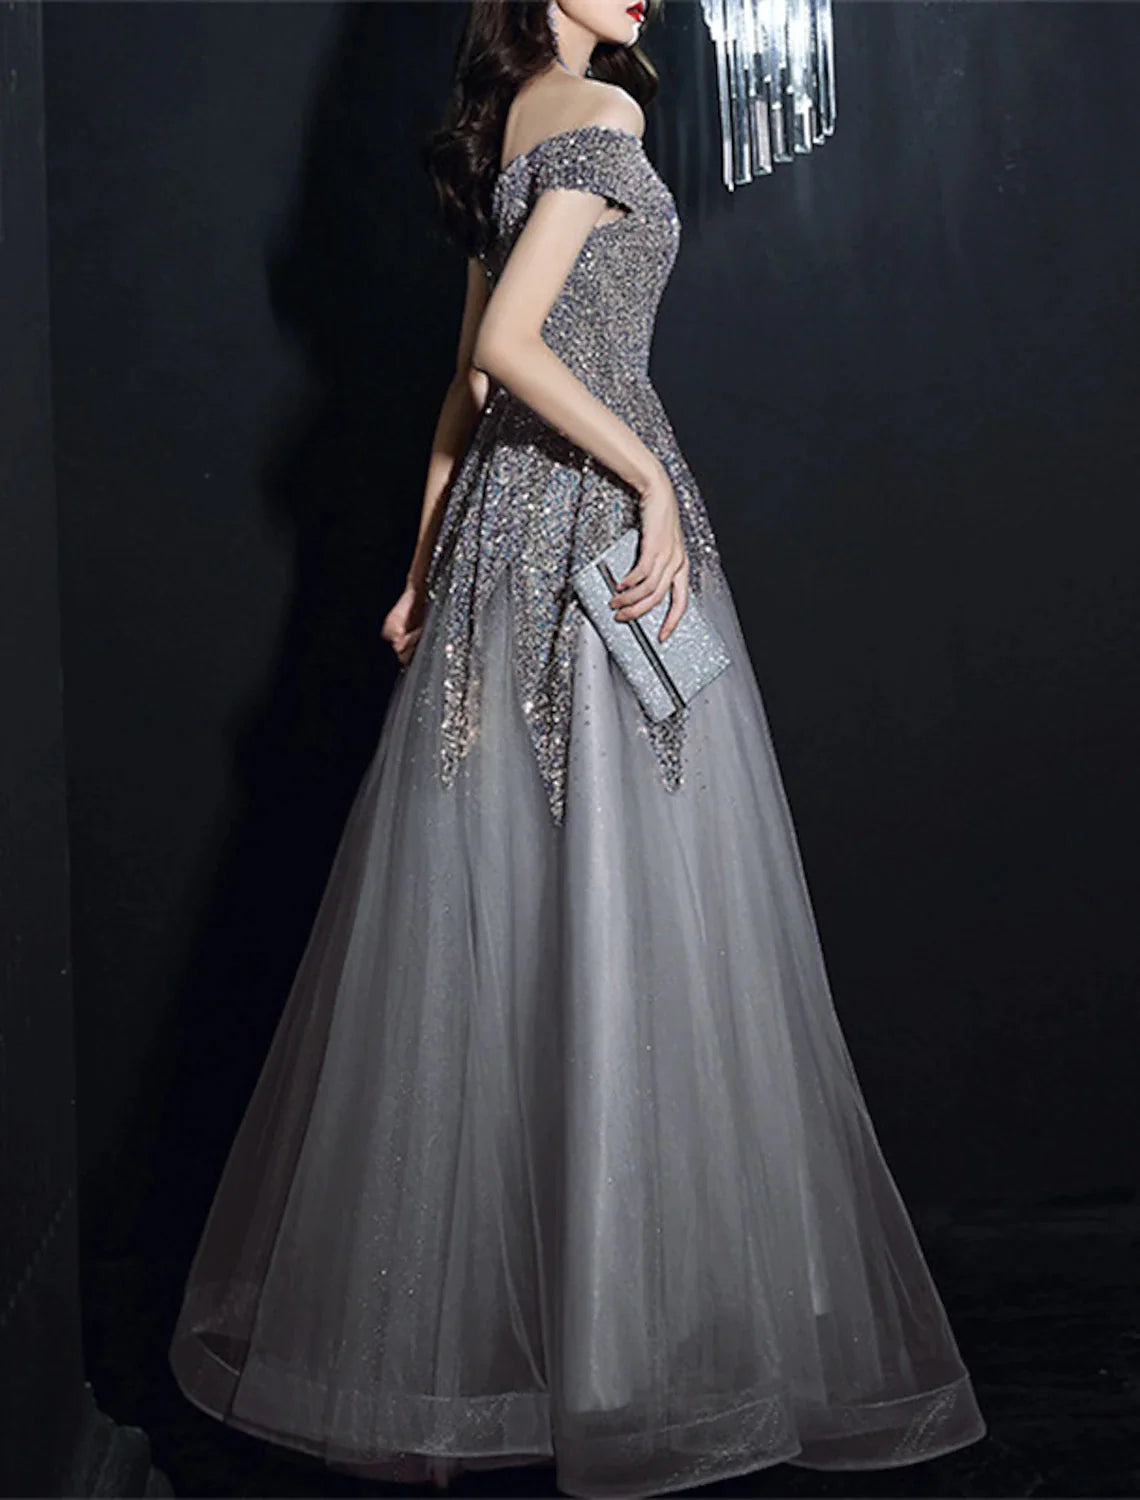 A-Line Prom Dresses Elegant Dress Formal Wedding Guest Floor Length Short Sleeve Off Shoulder Polyester with Sequin